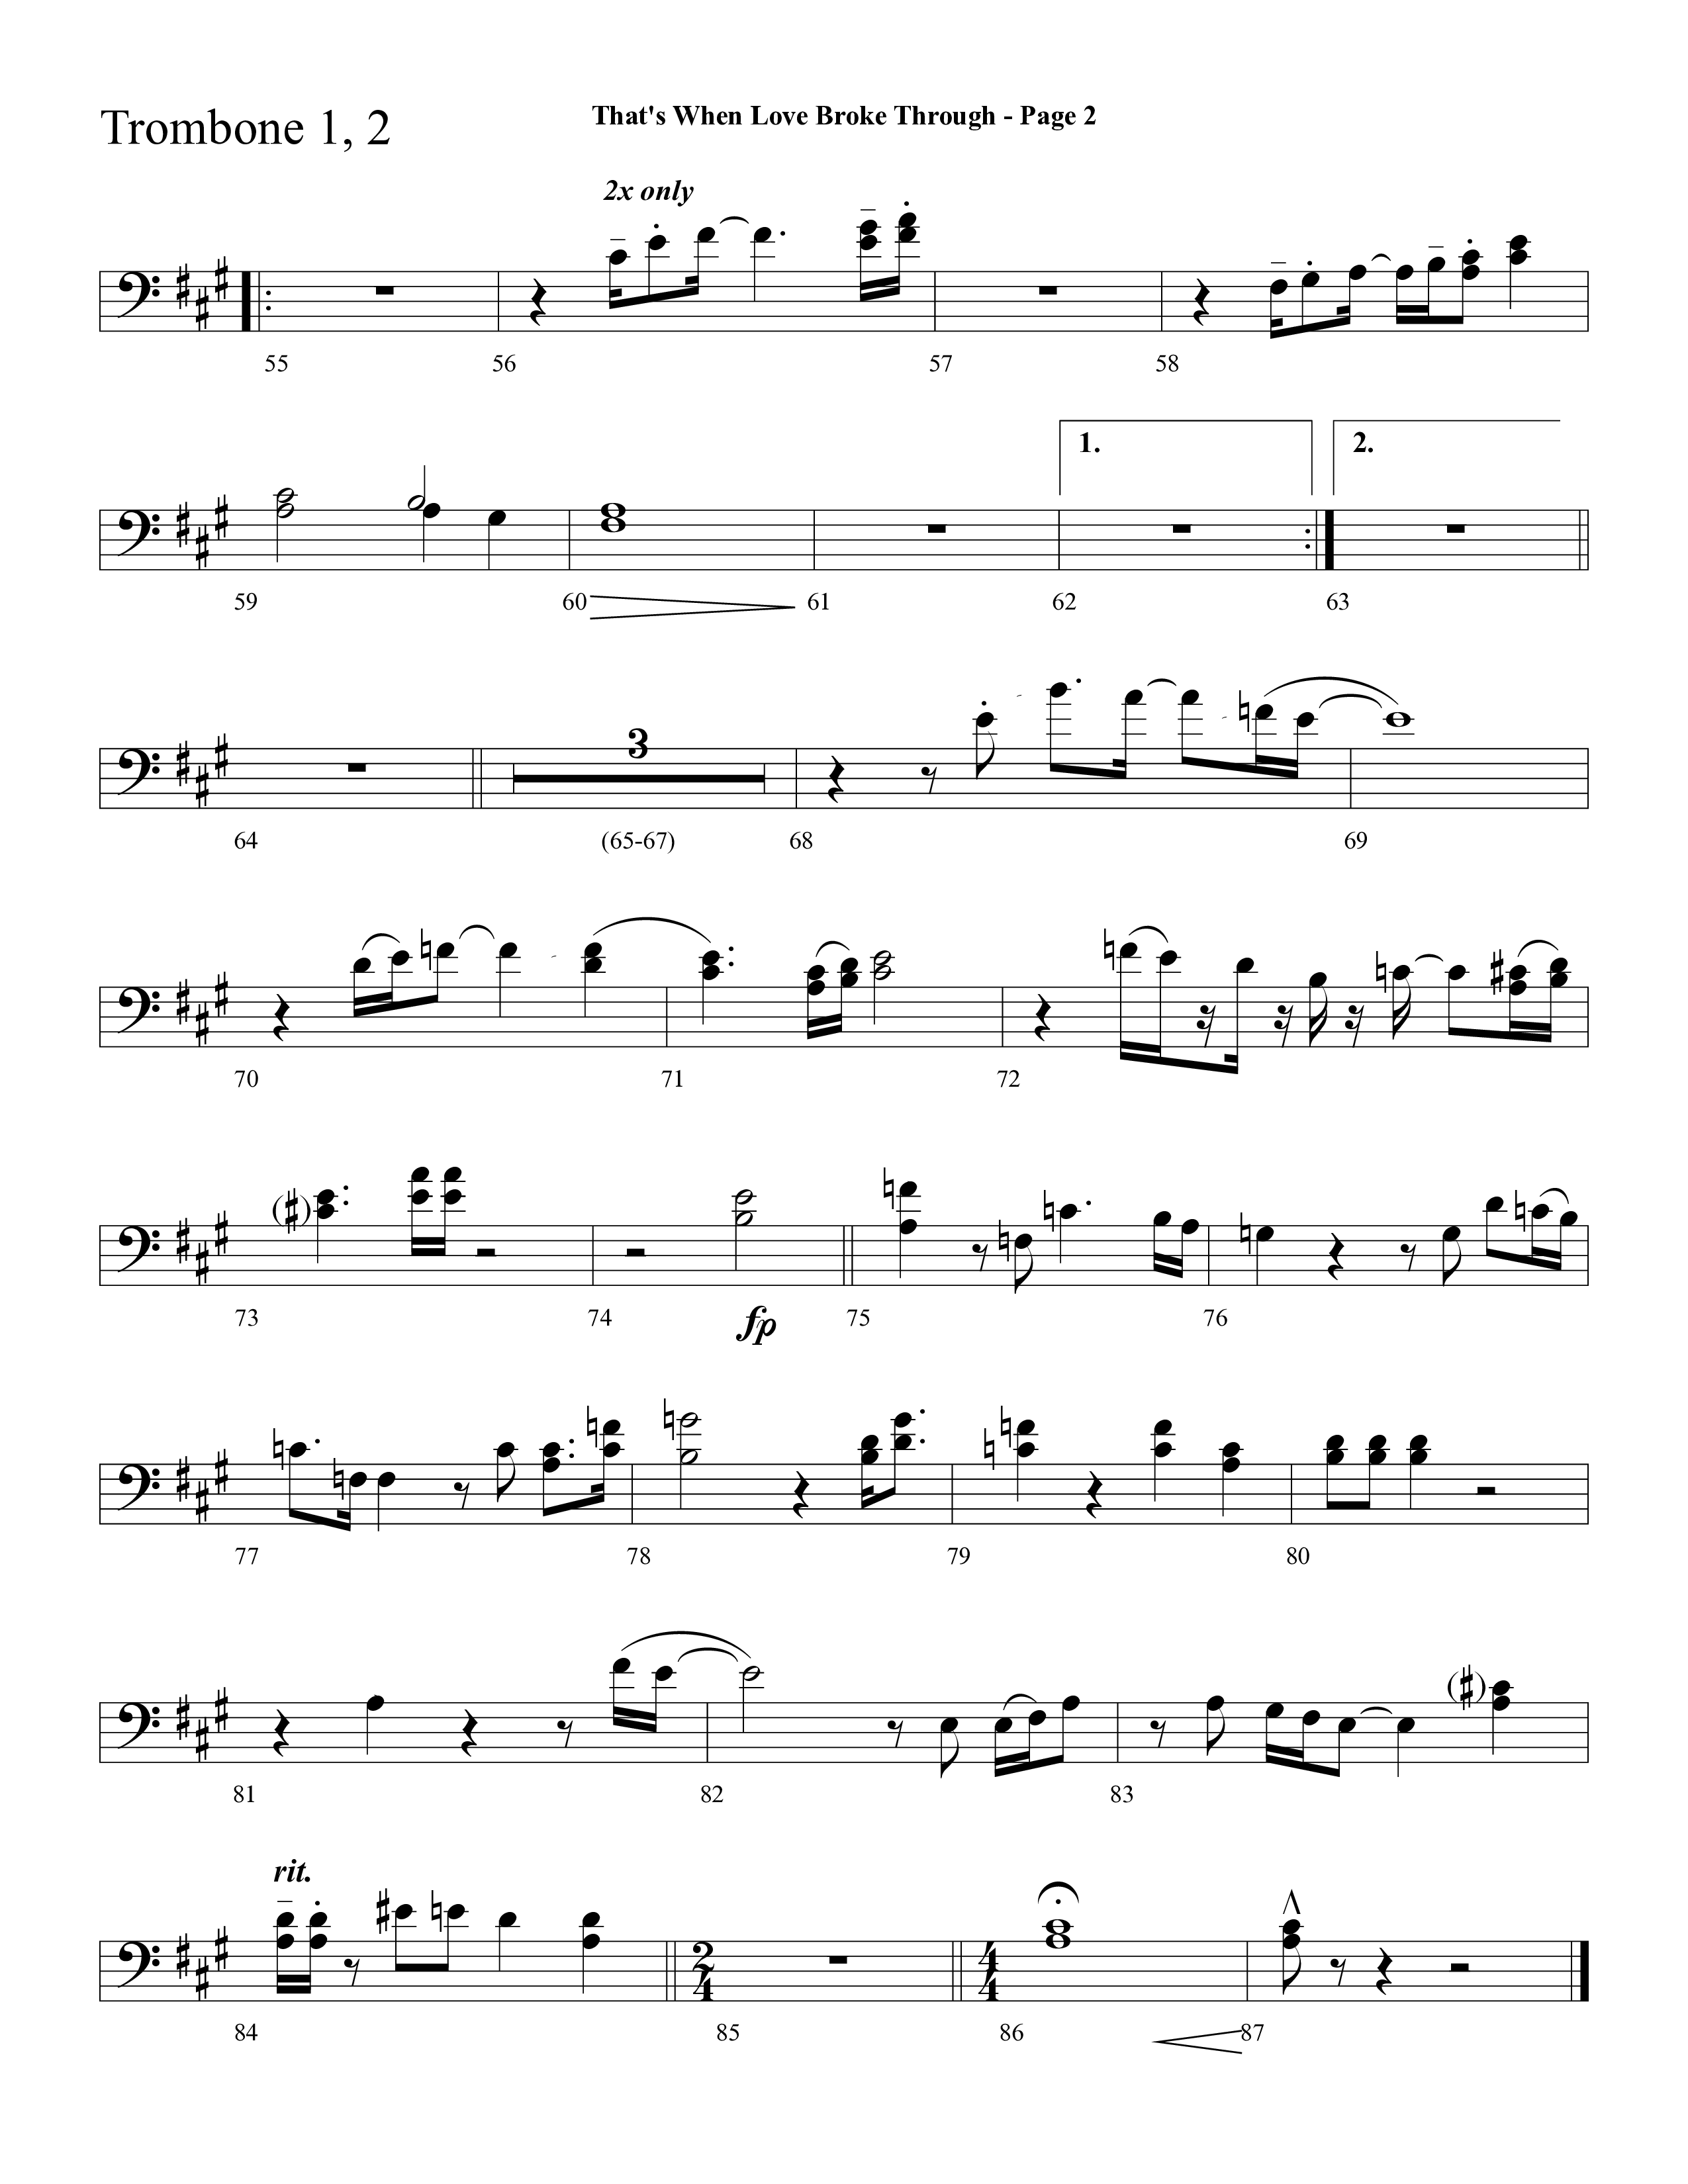 That's When Love Broke Through (Choral Anthem SATB) Trombone 1/2 (Lifeway Choral / Arr. Mark Willard / Orch. Stephen K. Hand / Orch. Phillip Keveren)